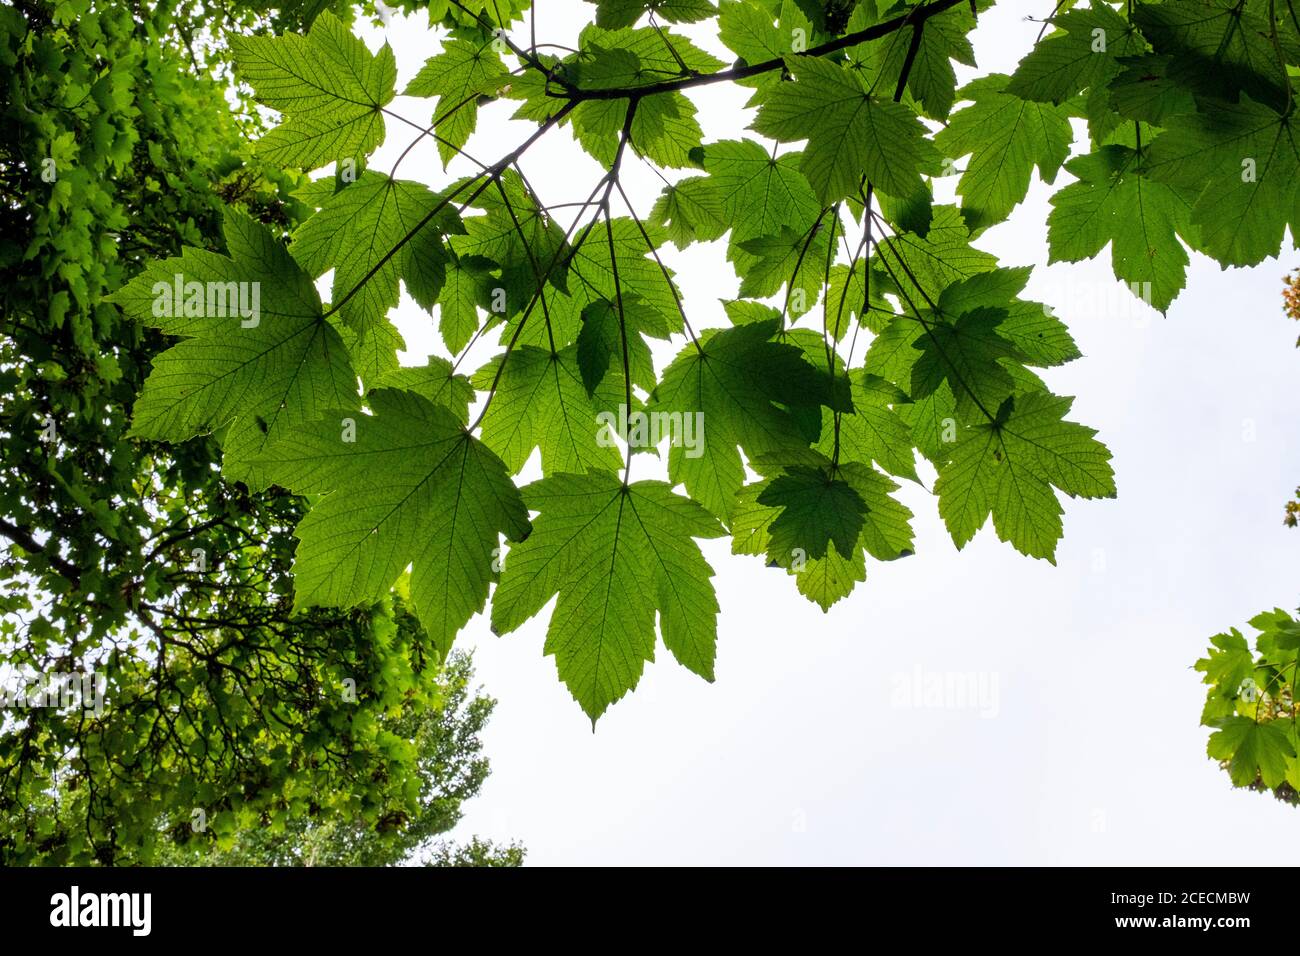 Platanen und Blätter in Brighton UK - Acer pseudoplatanus Sapindaceae Sapindales auch bekannt als die Sycamore Maple in Amerika Stockfoto